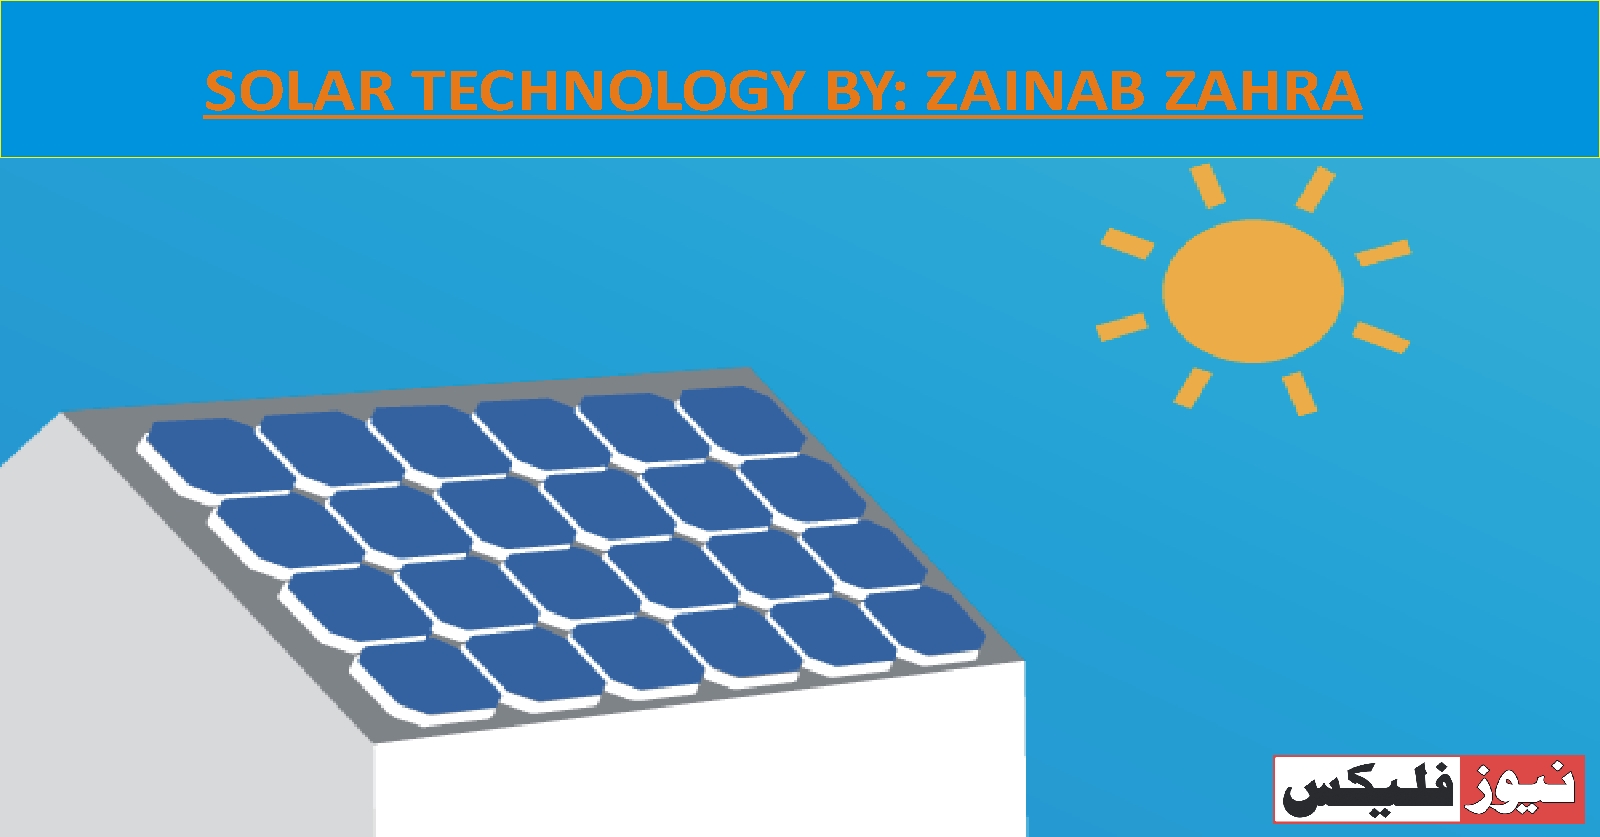 SOLAR TECHNOLOGY BY: ZAINAB ZAHRA